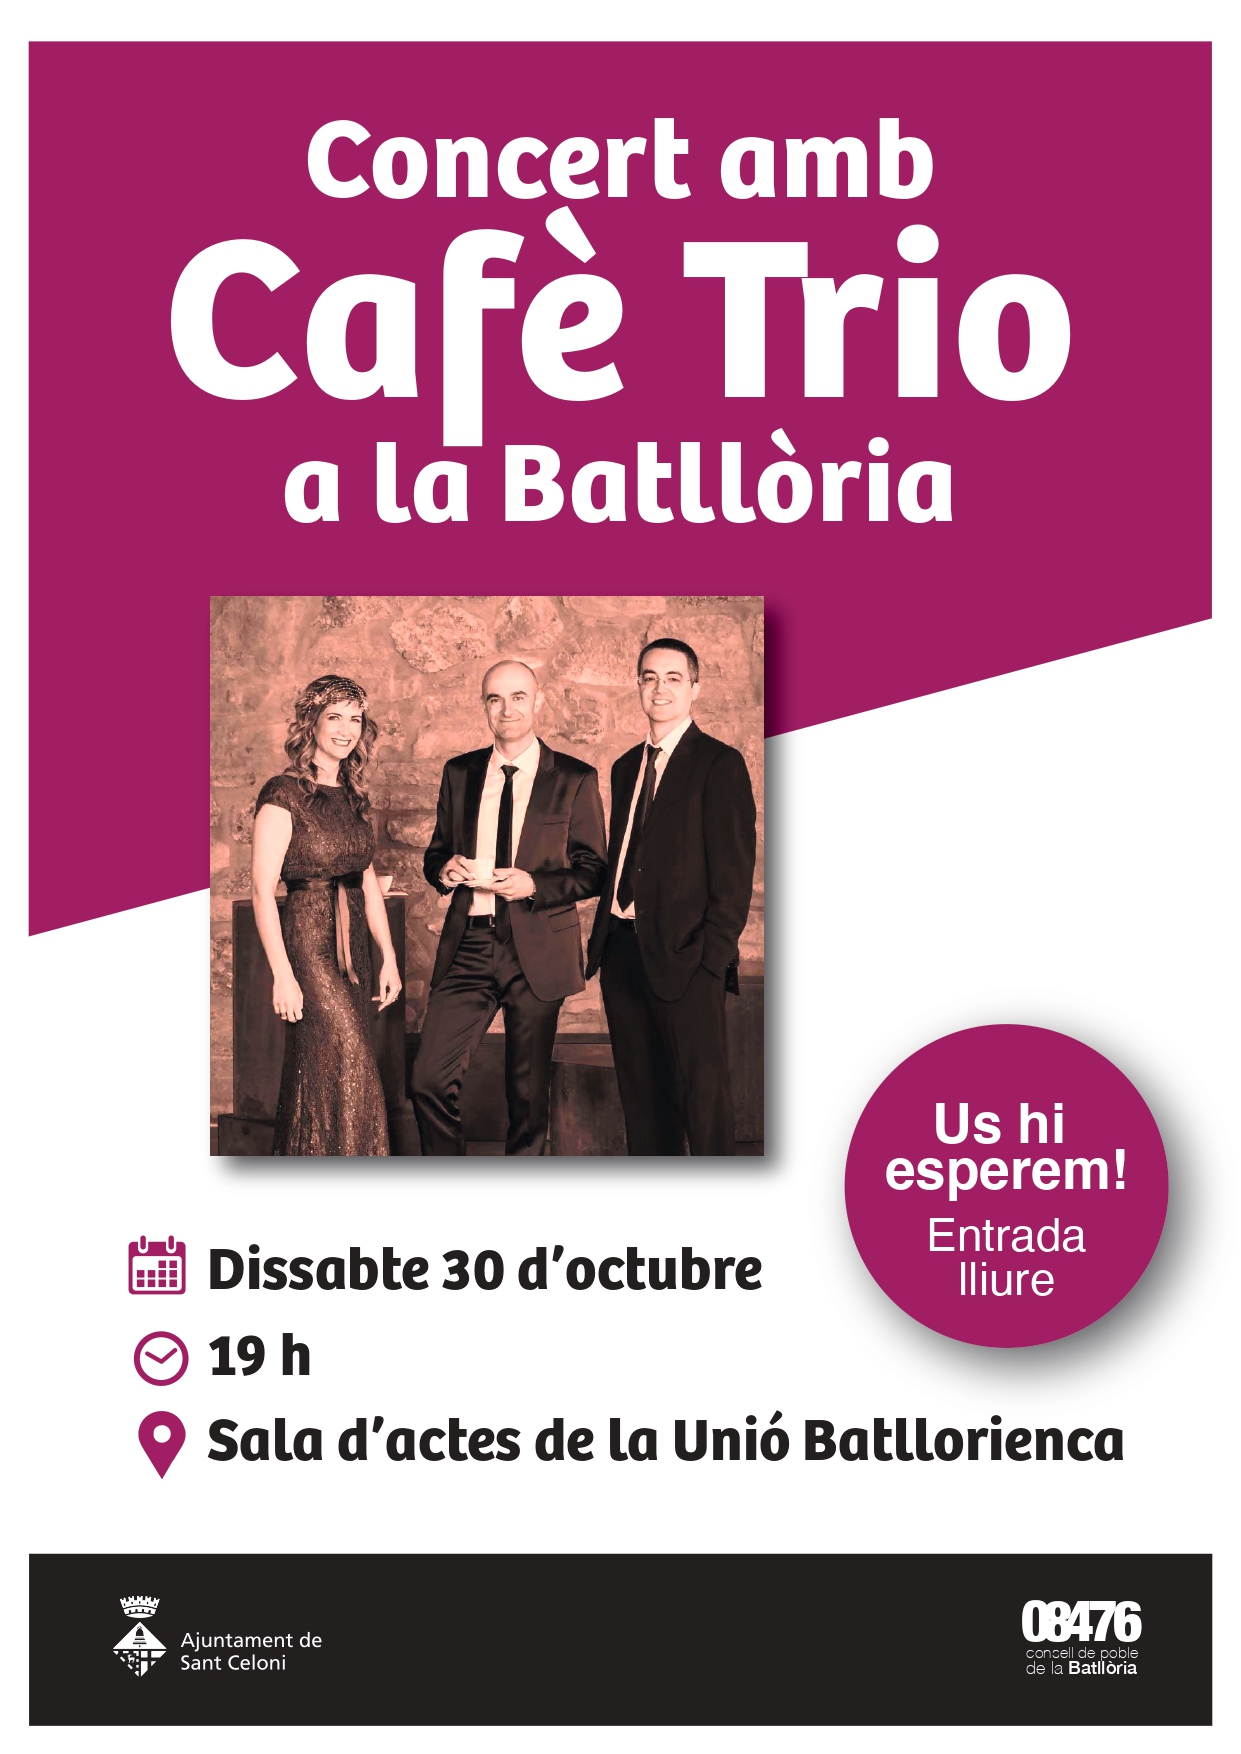 Concert i ball amb Caf Trio